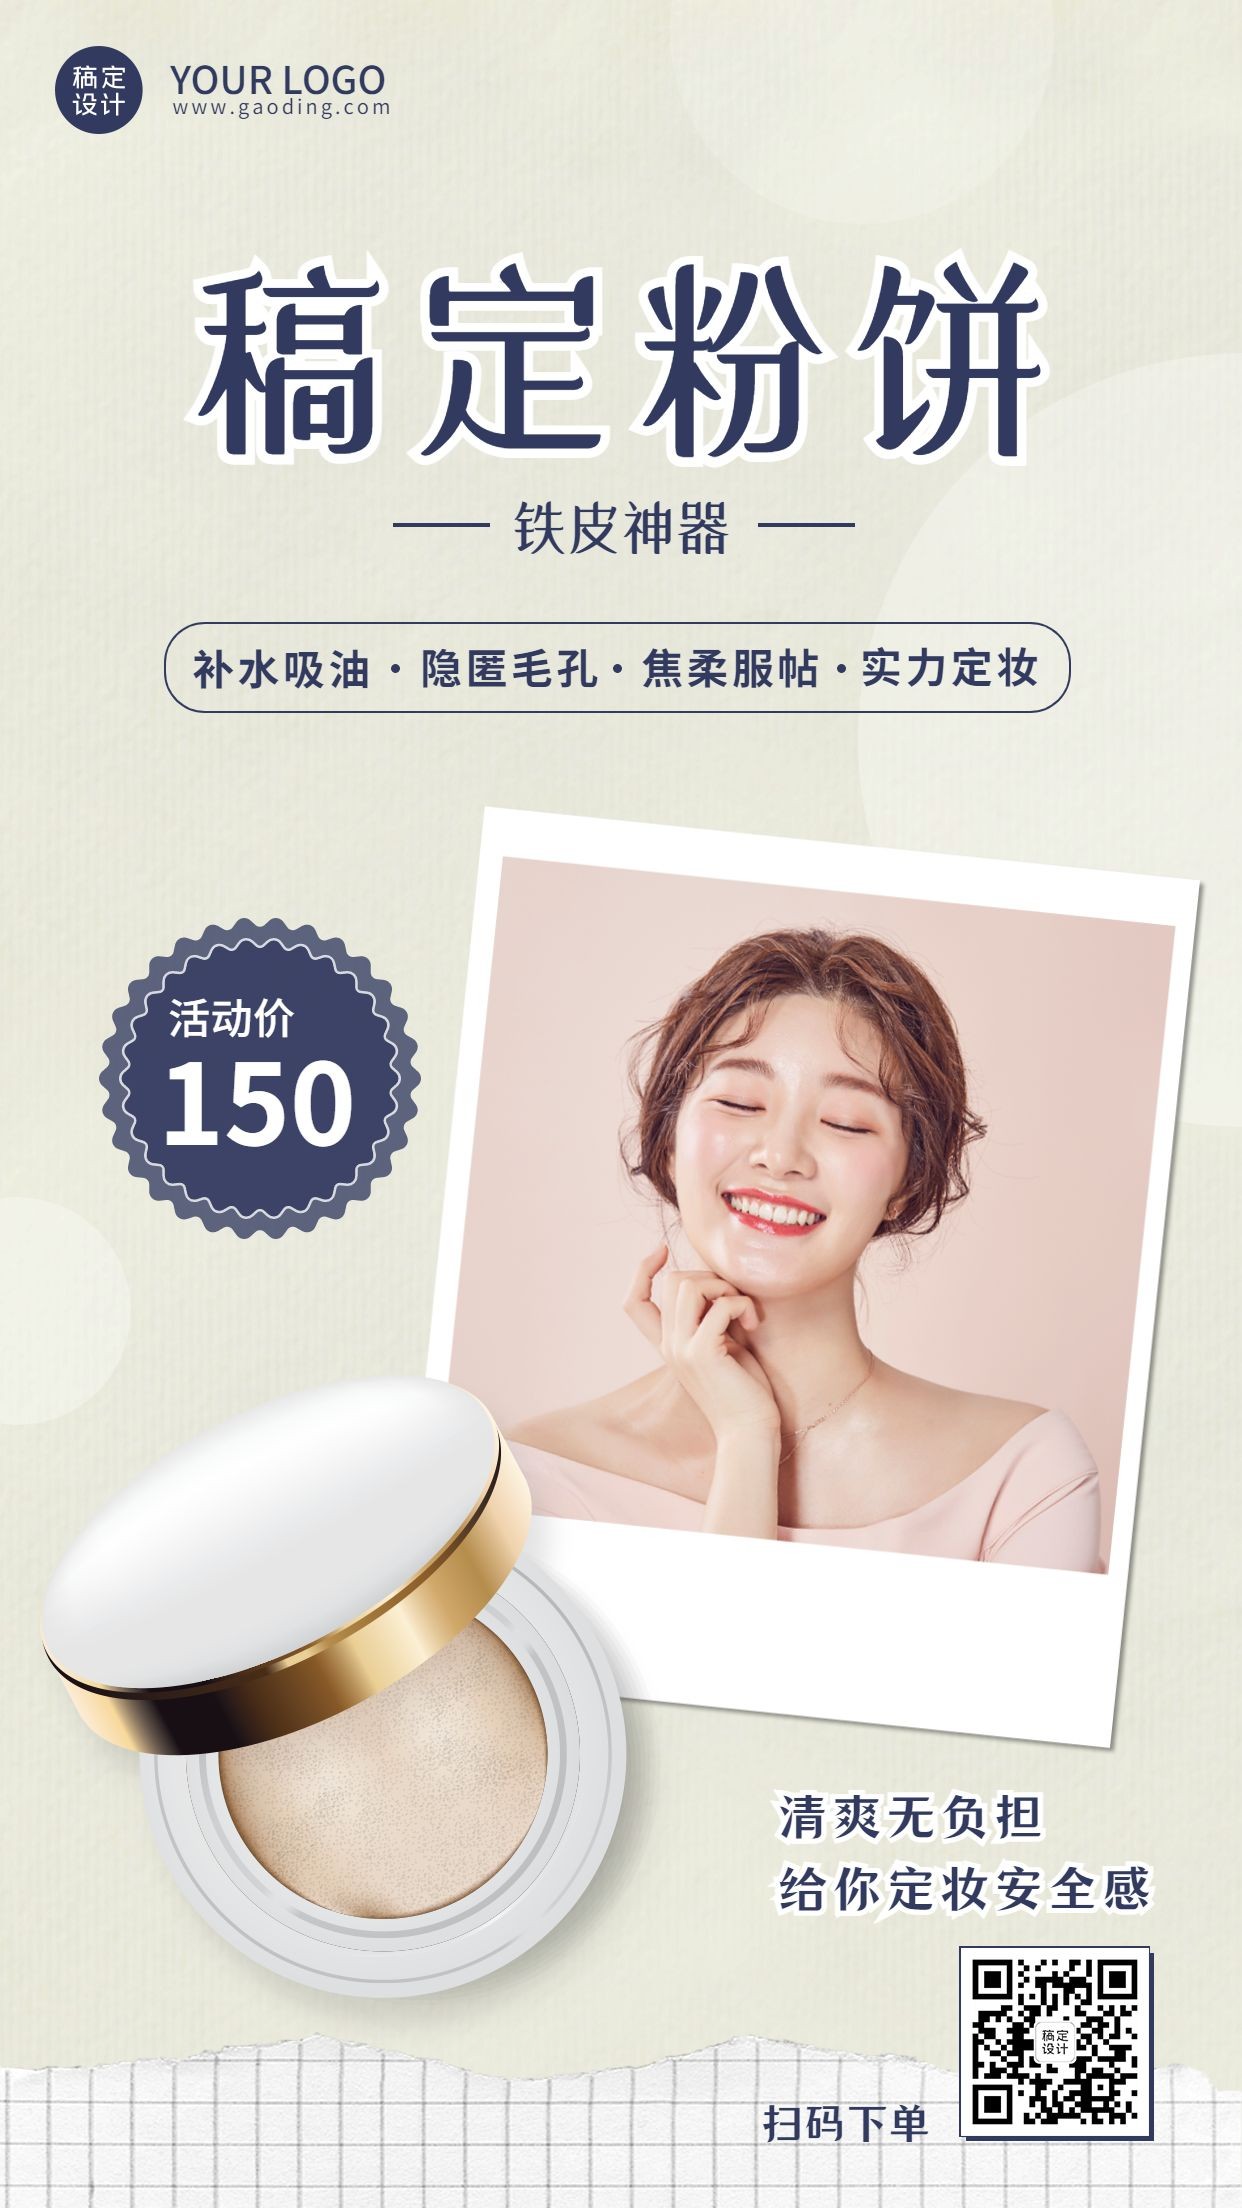 美容美妆粉饼产品展示营销手机海报